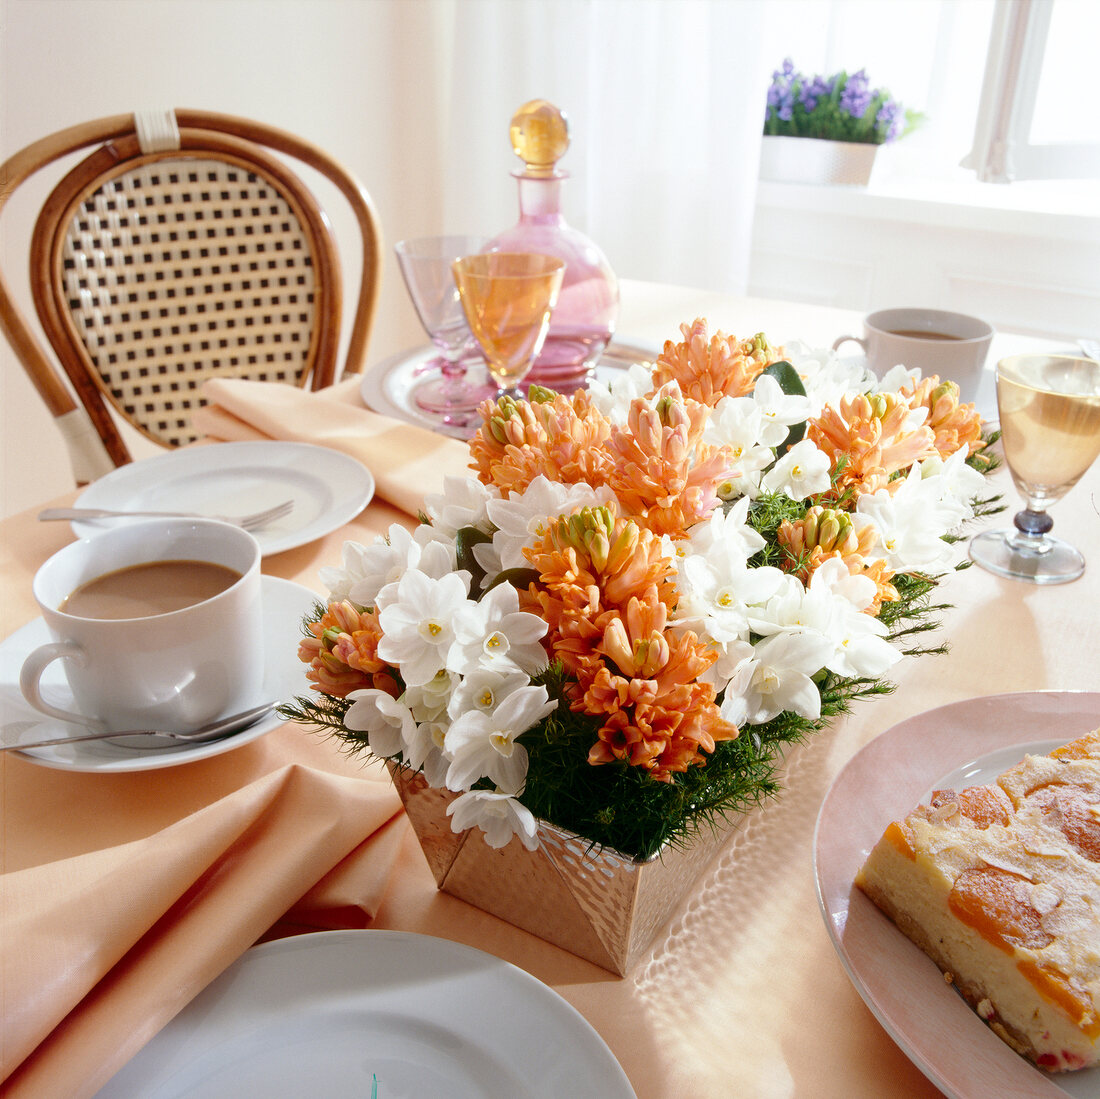 Blumengesteck in einer Backform auf gedecktem Tisch, weiß und orange.